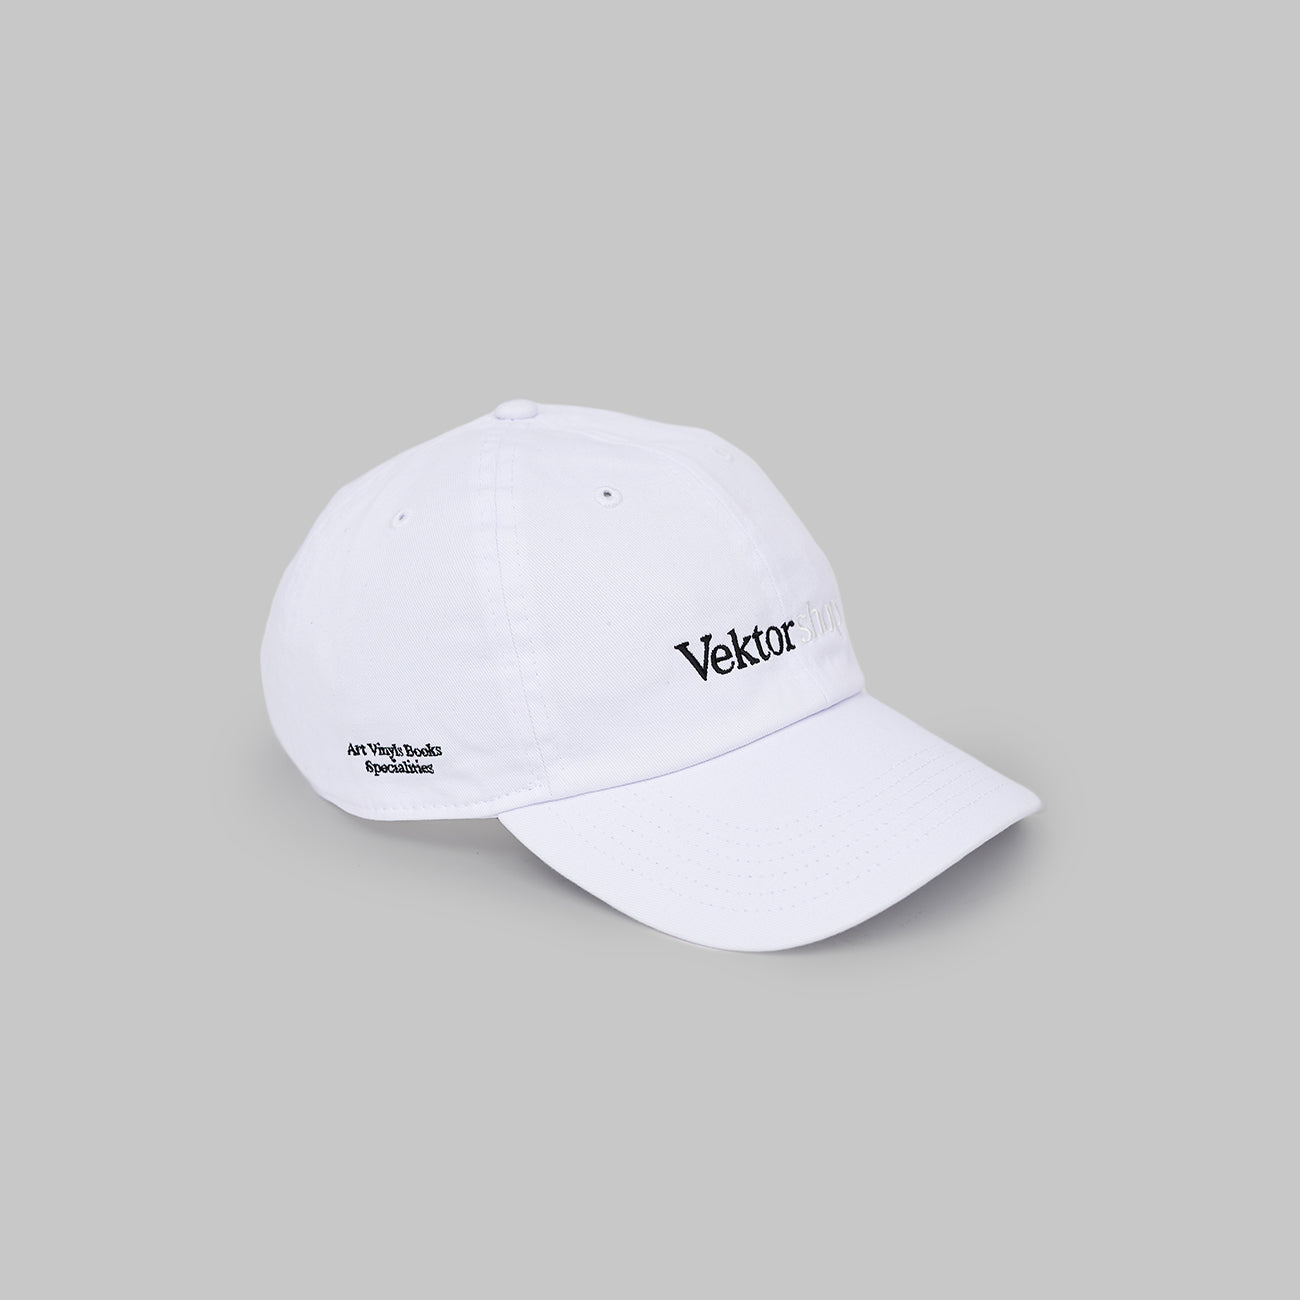 Vektor shop / Signature Cap